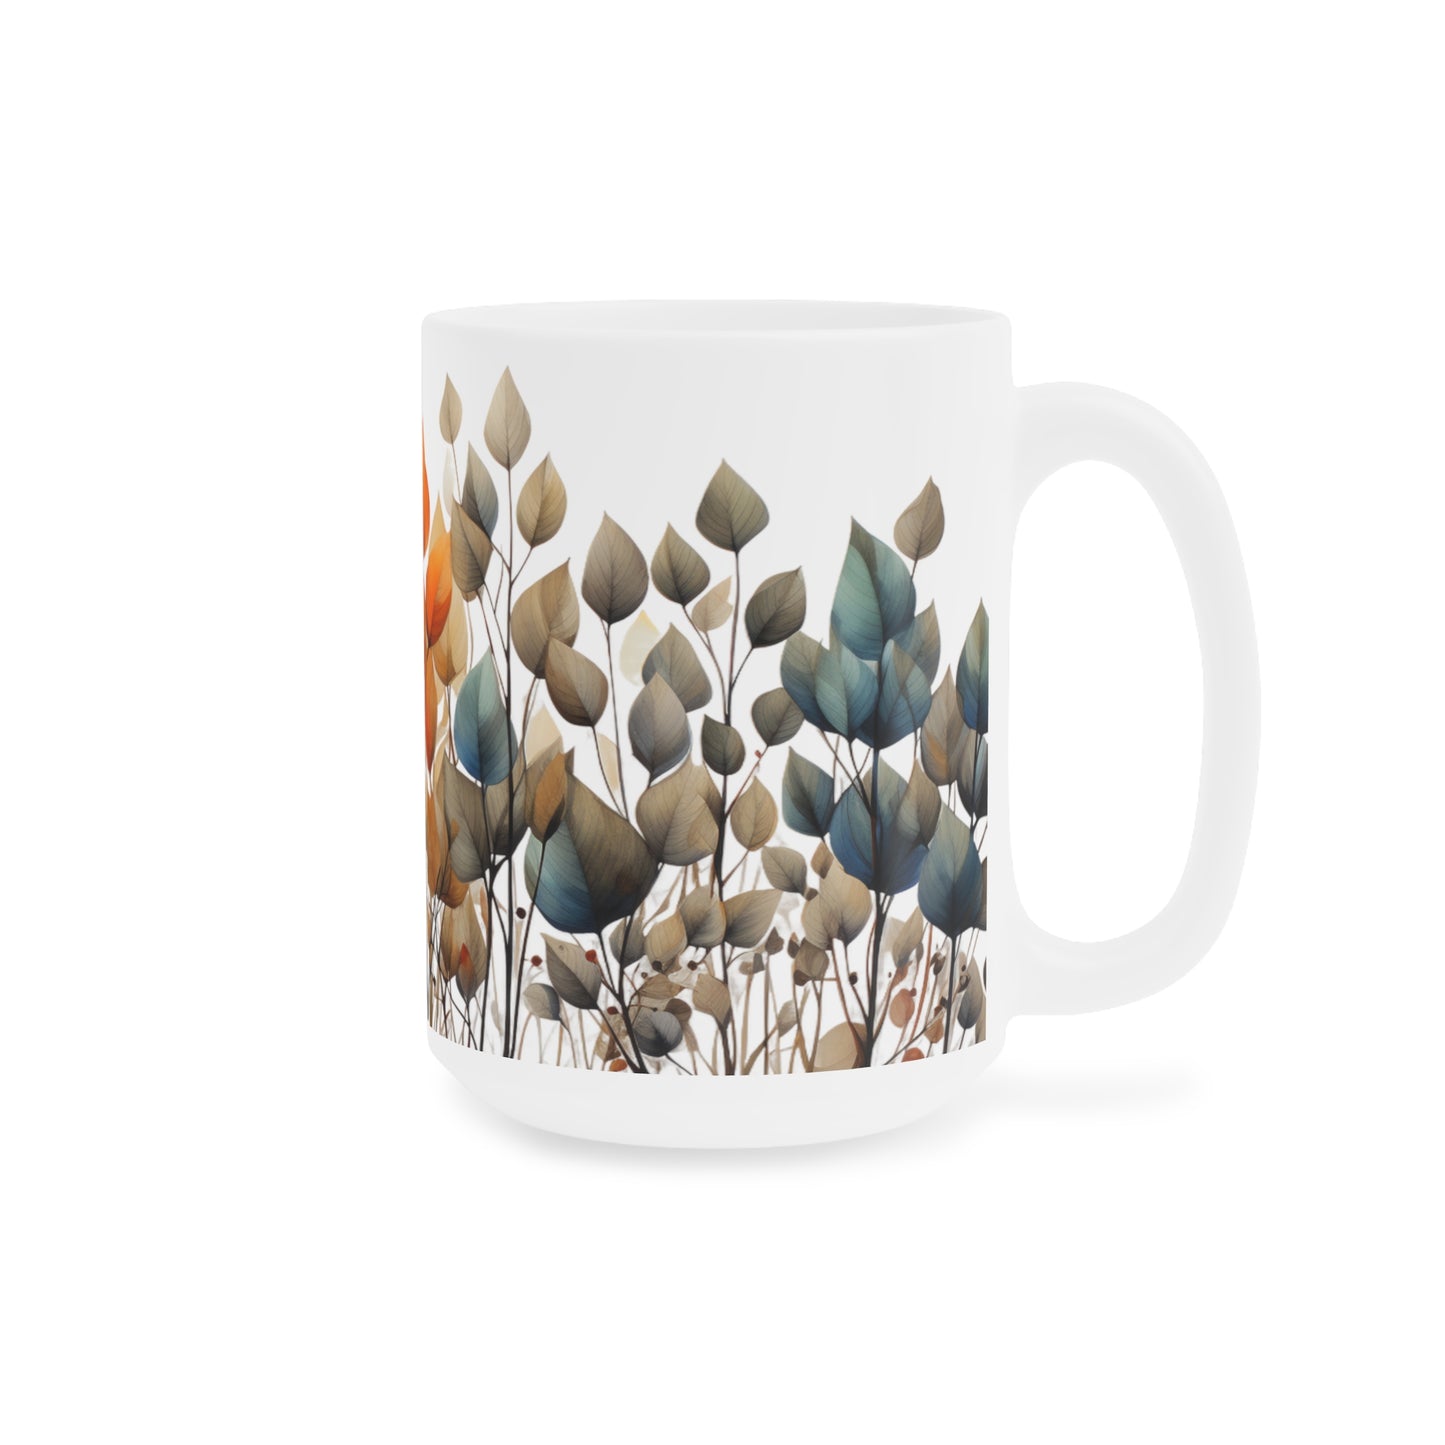 Autumn Leaves | Autumn Fall Coffee Mug | Rustic Fall Mug | Watercolor Fall Mug